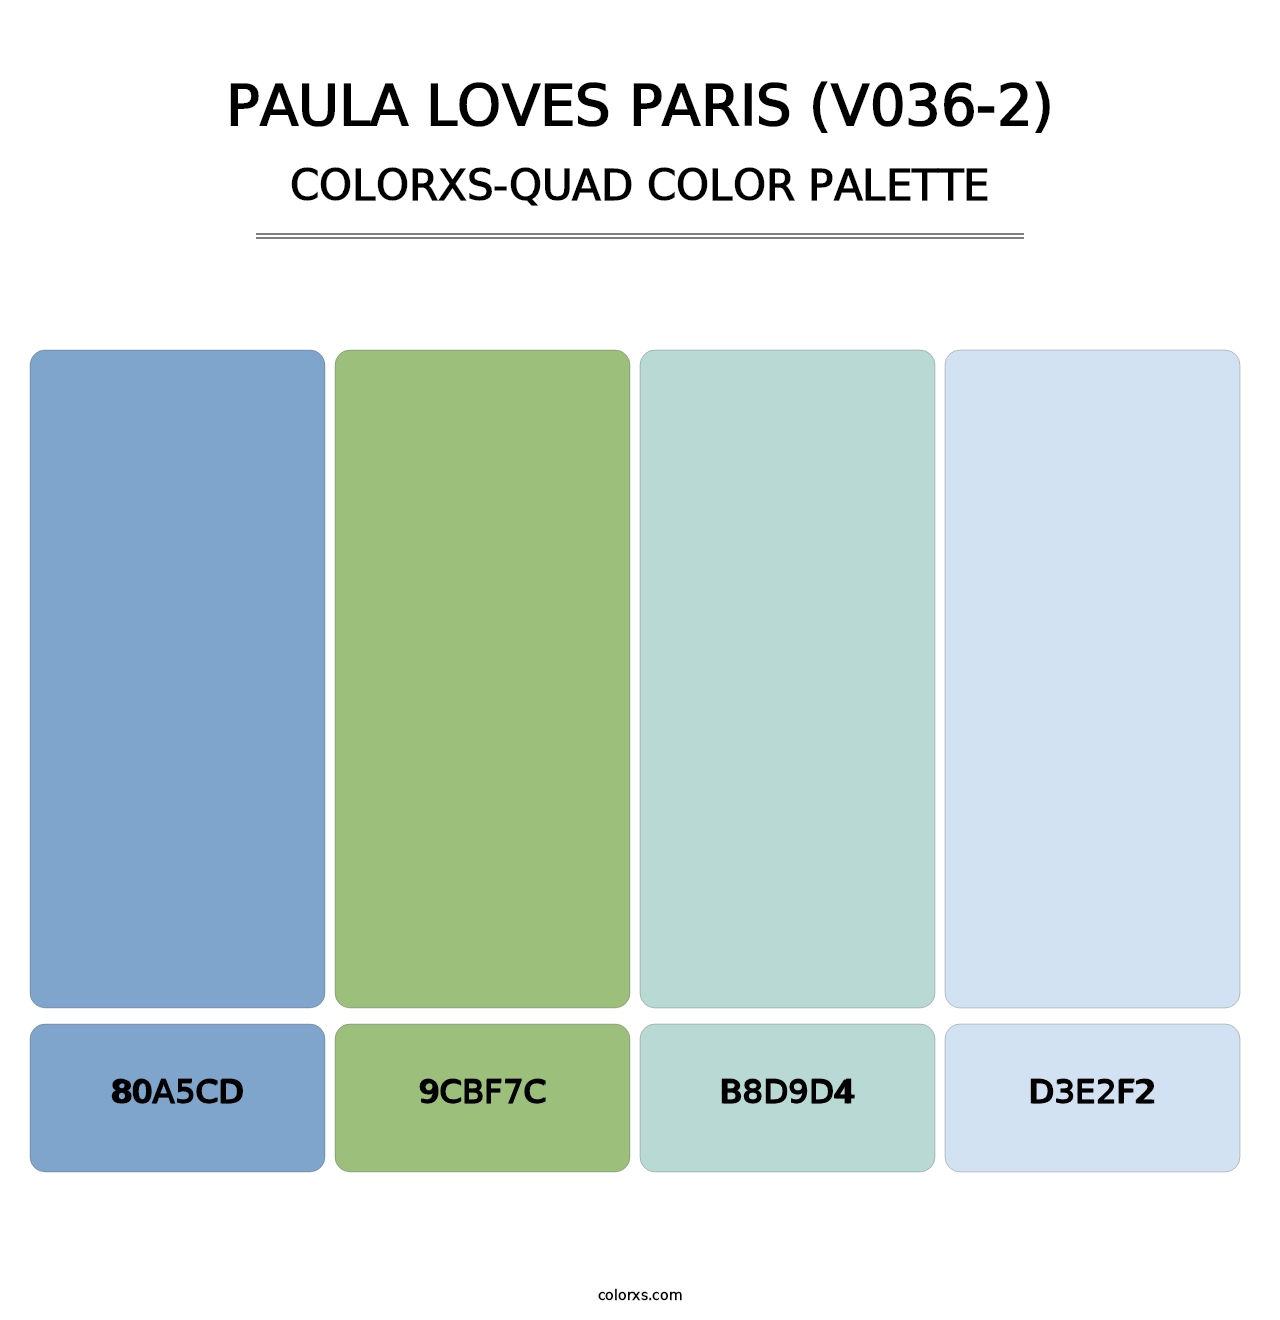 Paula Loves Paris (V036-2) - Colorxs Quad Palette